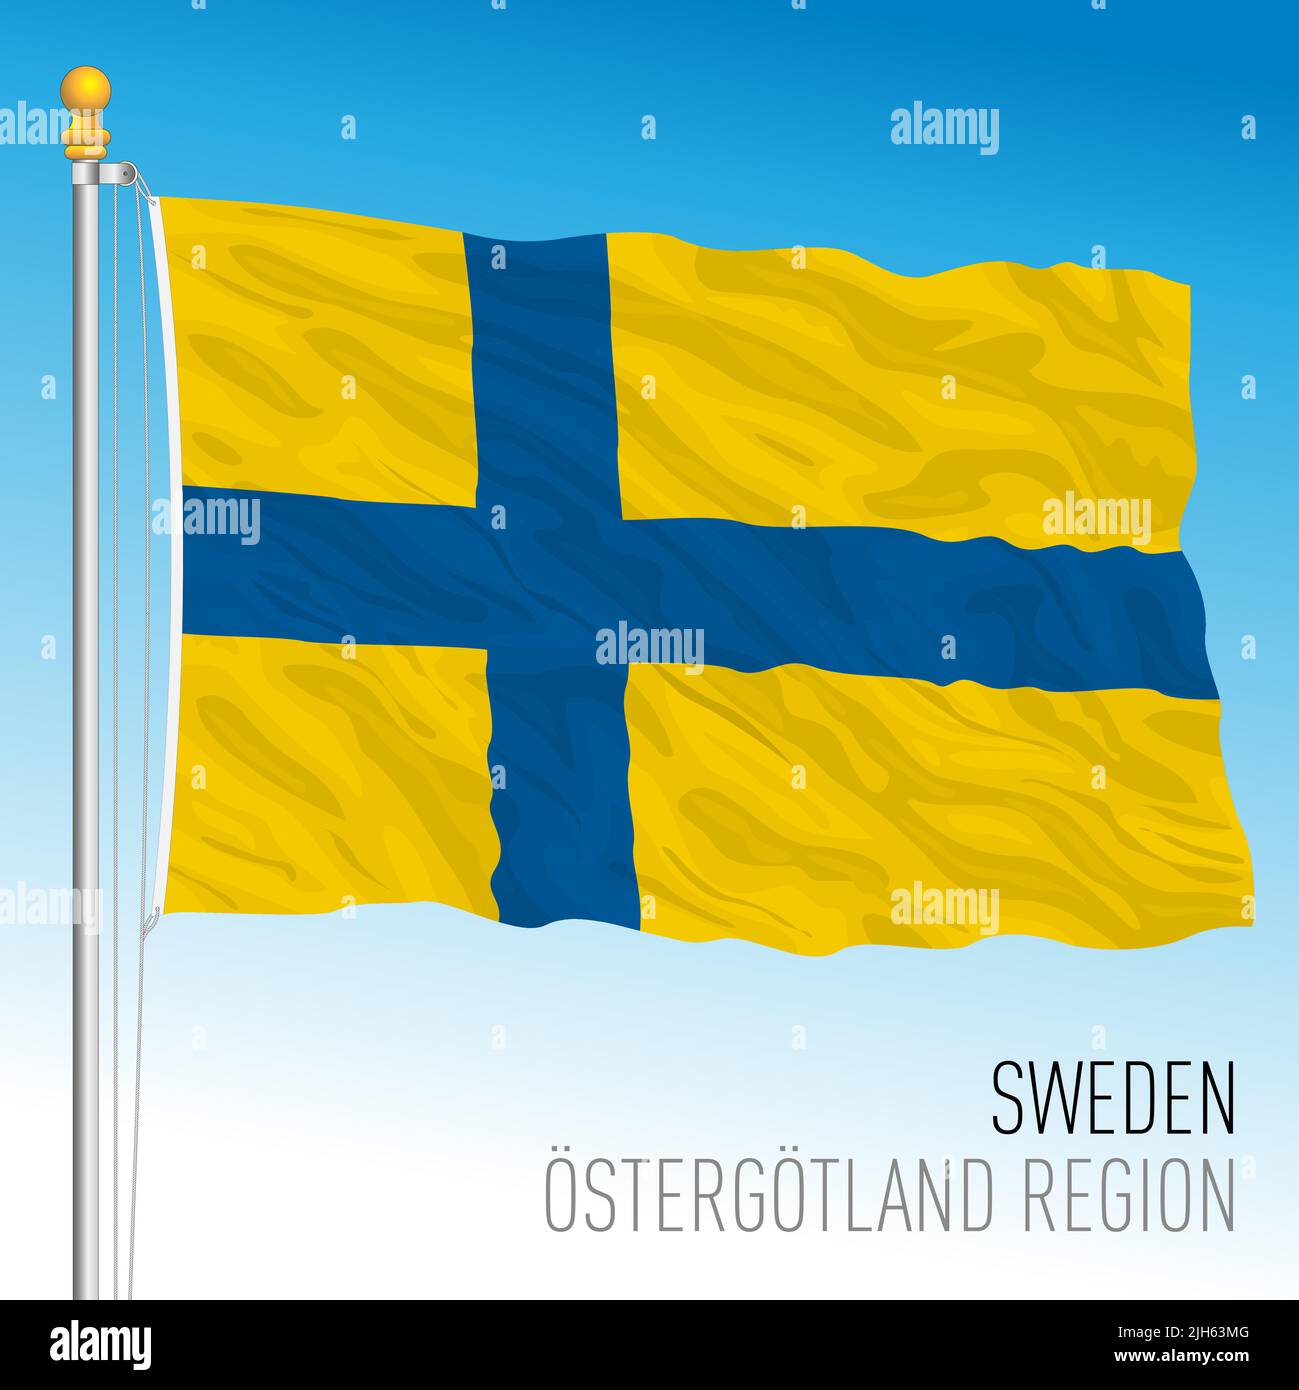 Bandera regional de Ostergotland, Reino de Suecia, ilustración de vectores Ilustración del Vector